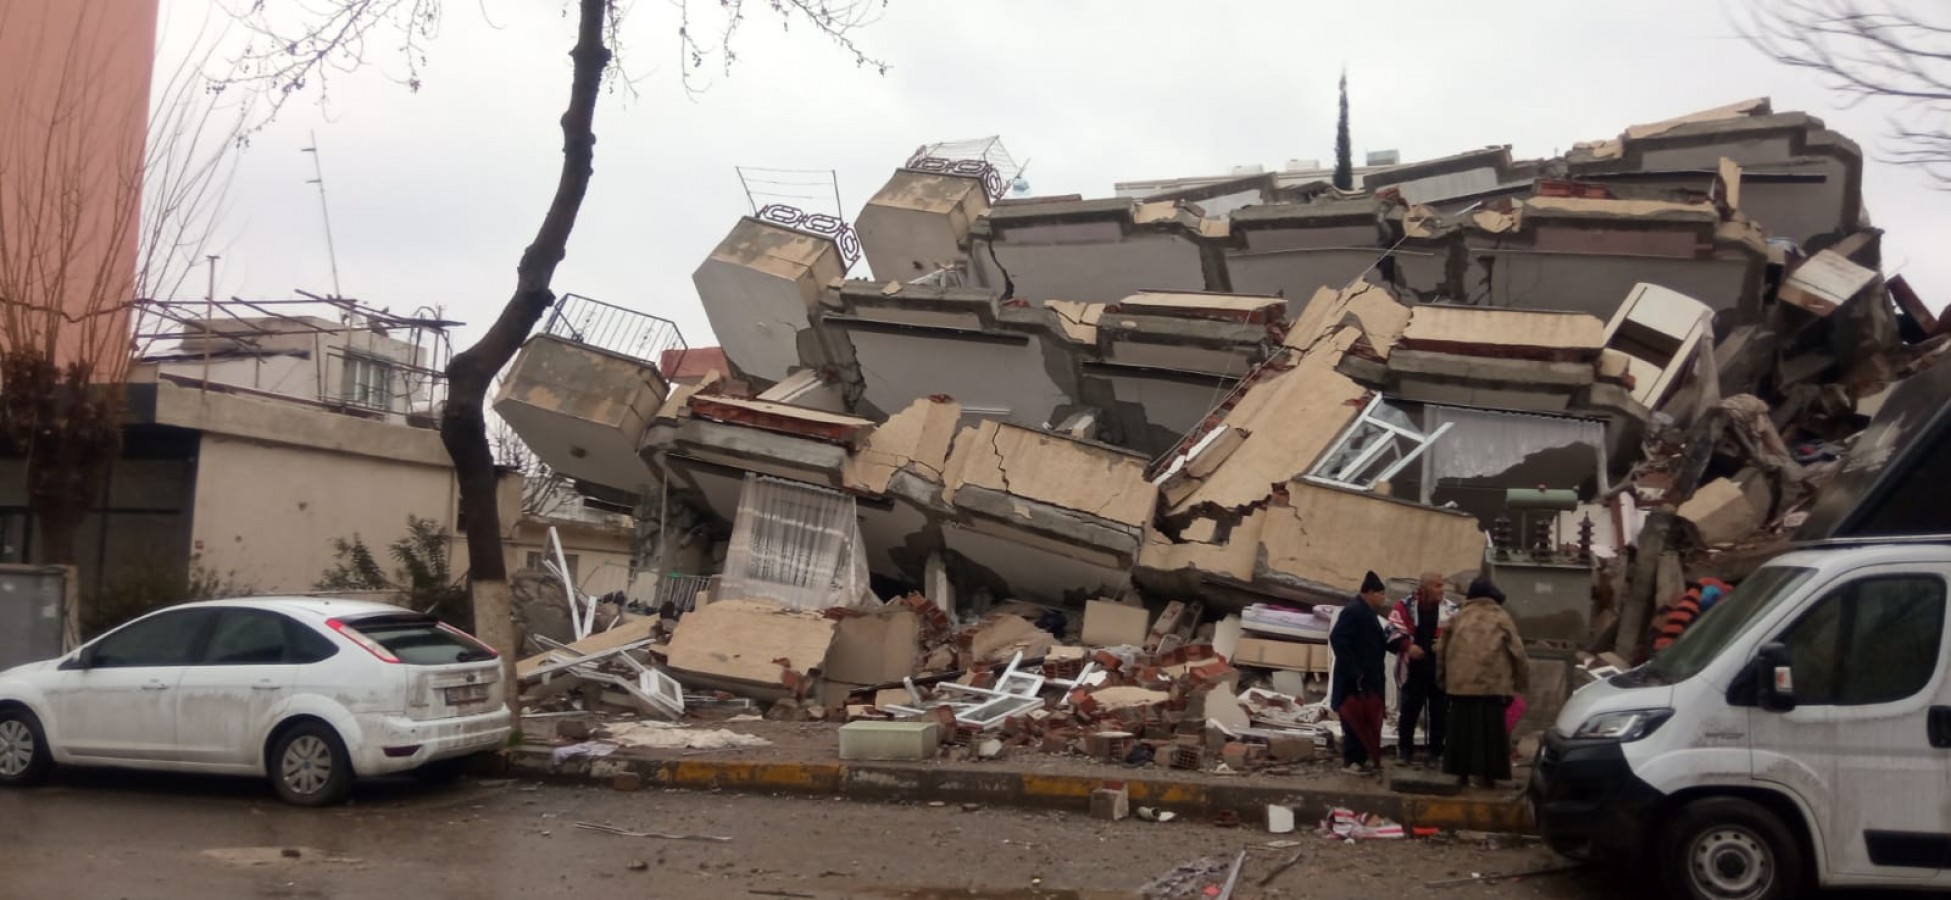 Şanlıurfa’da yıkılan binalara ilişkin soruşturma başlatıldı